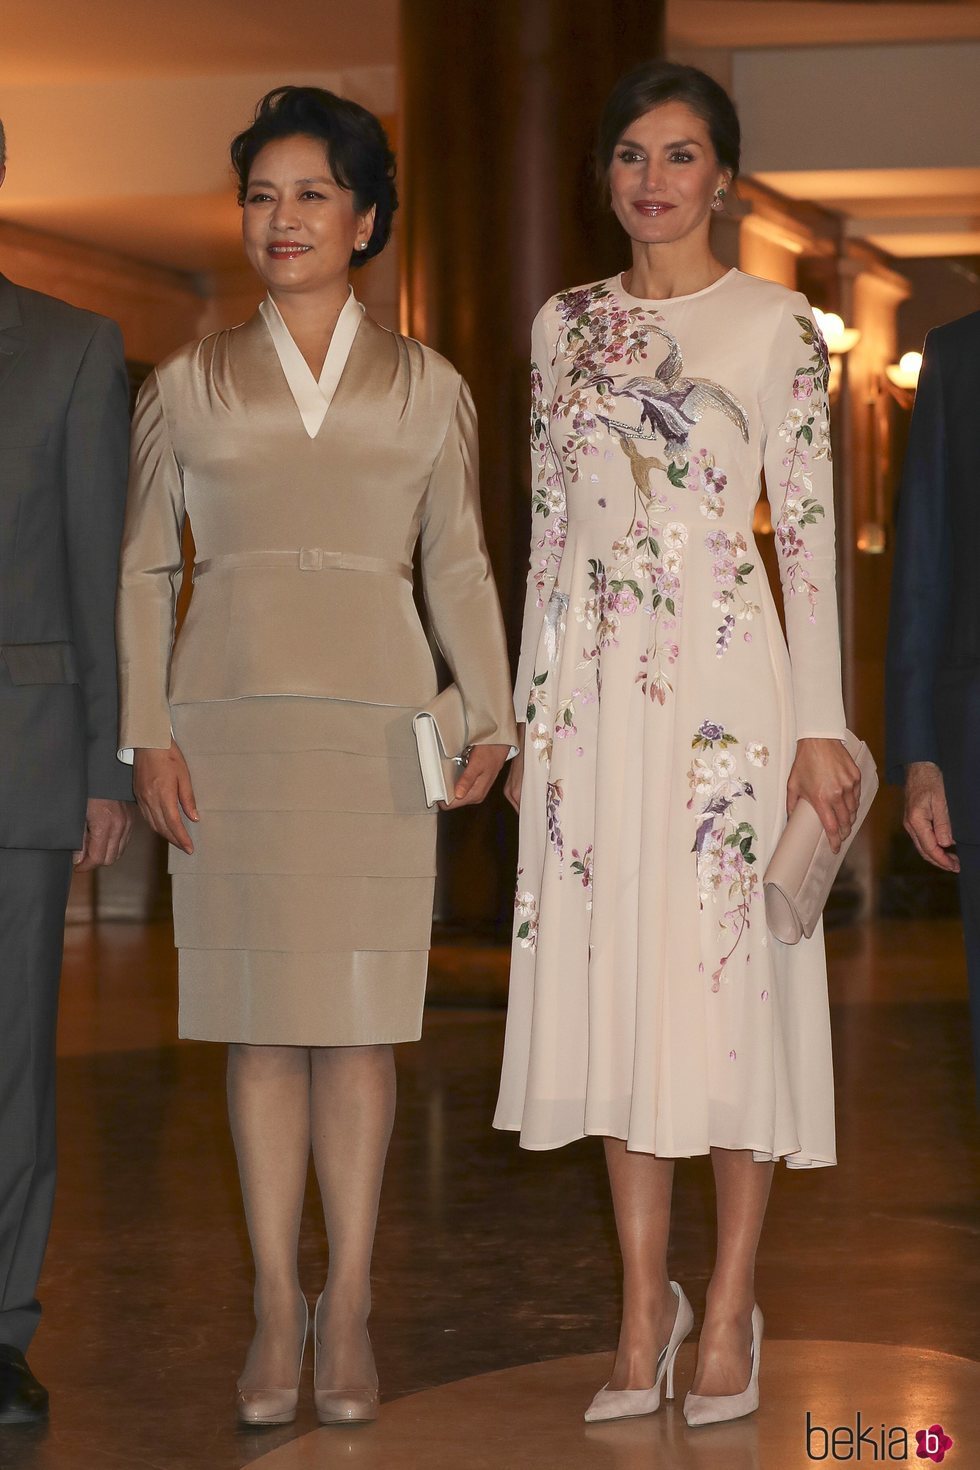 La Reina Letizia y la Primera Dama de China posan durante su visita al Teatro Real